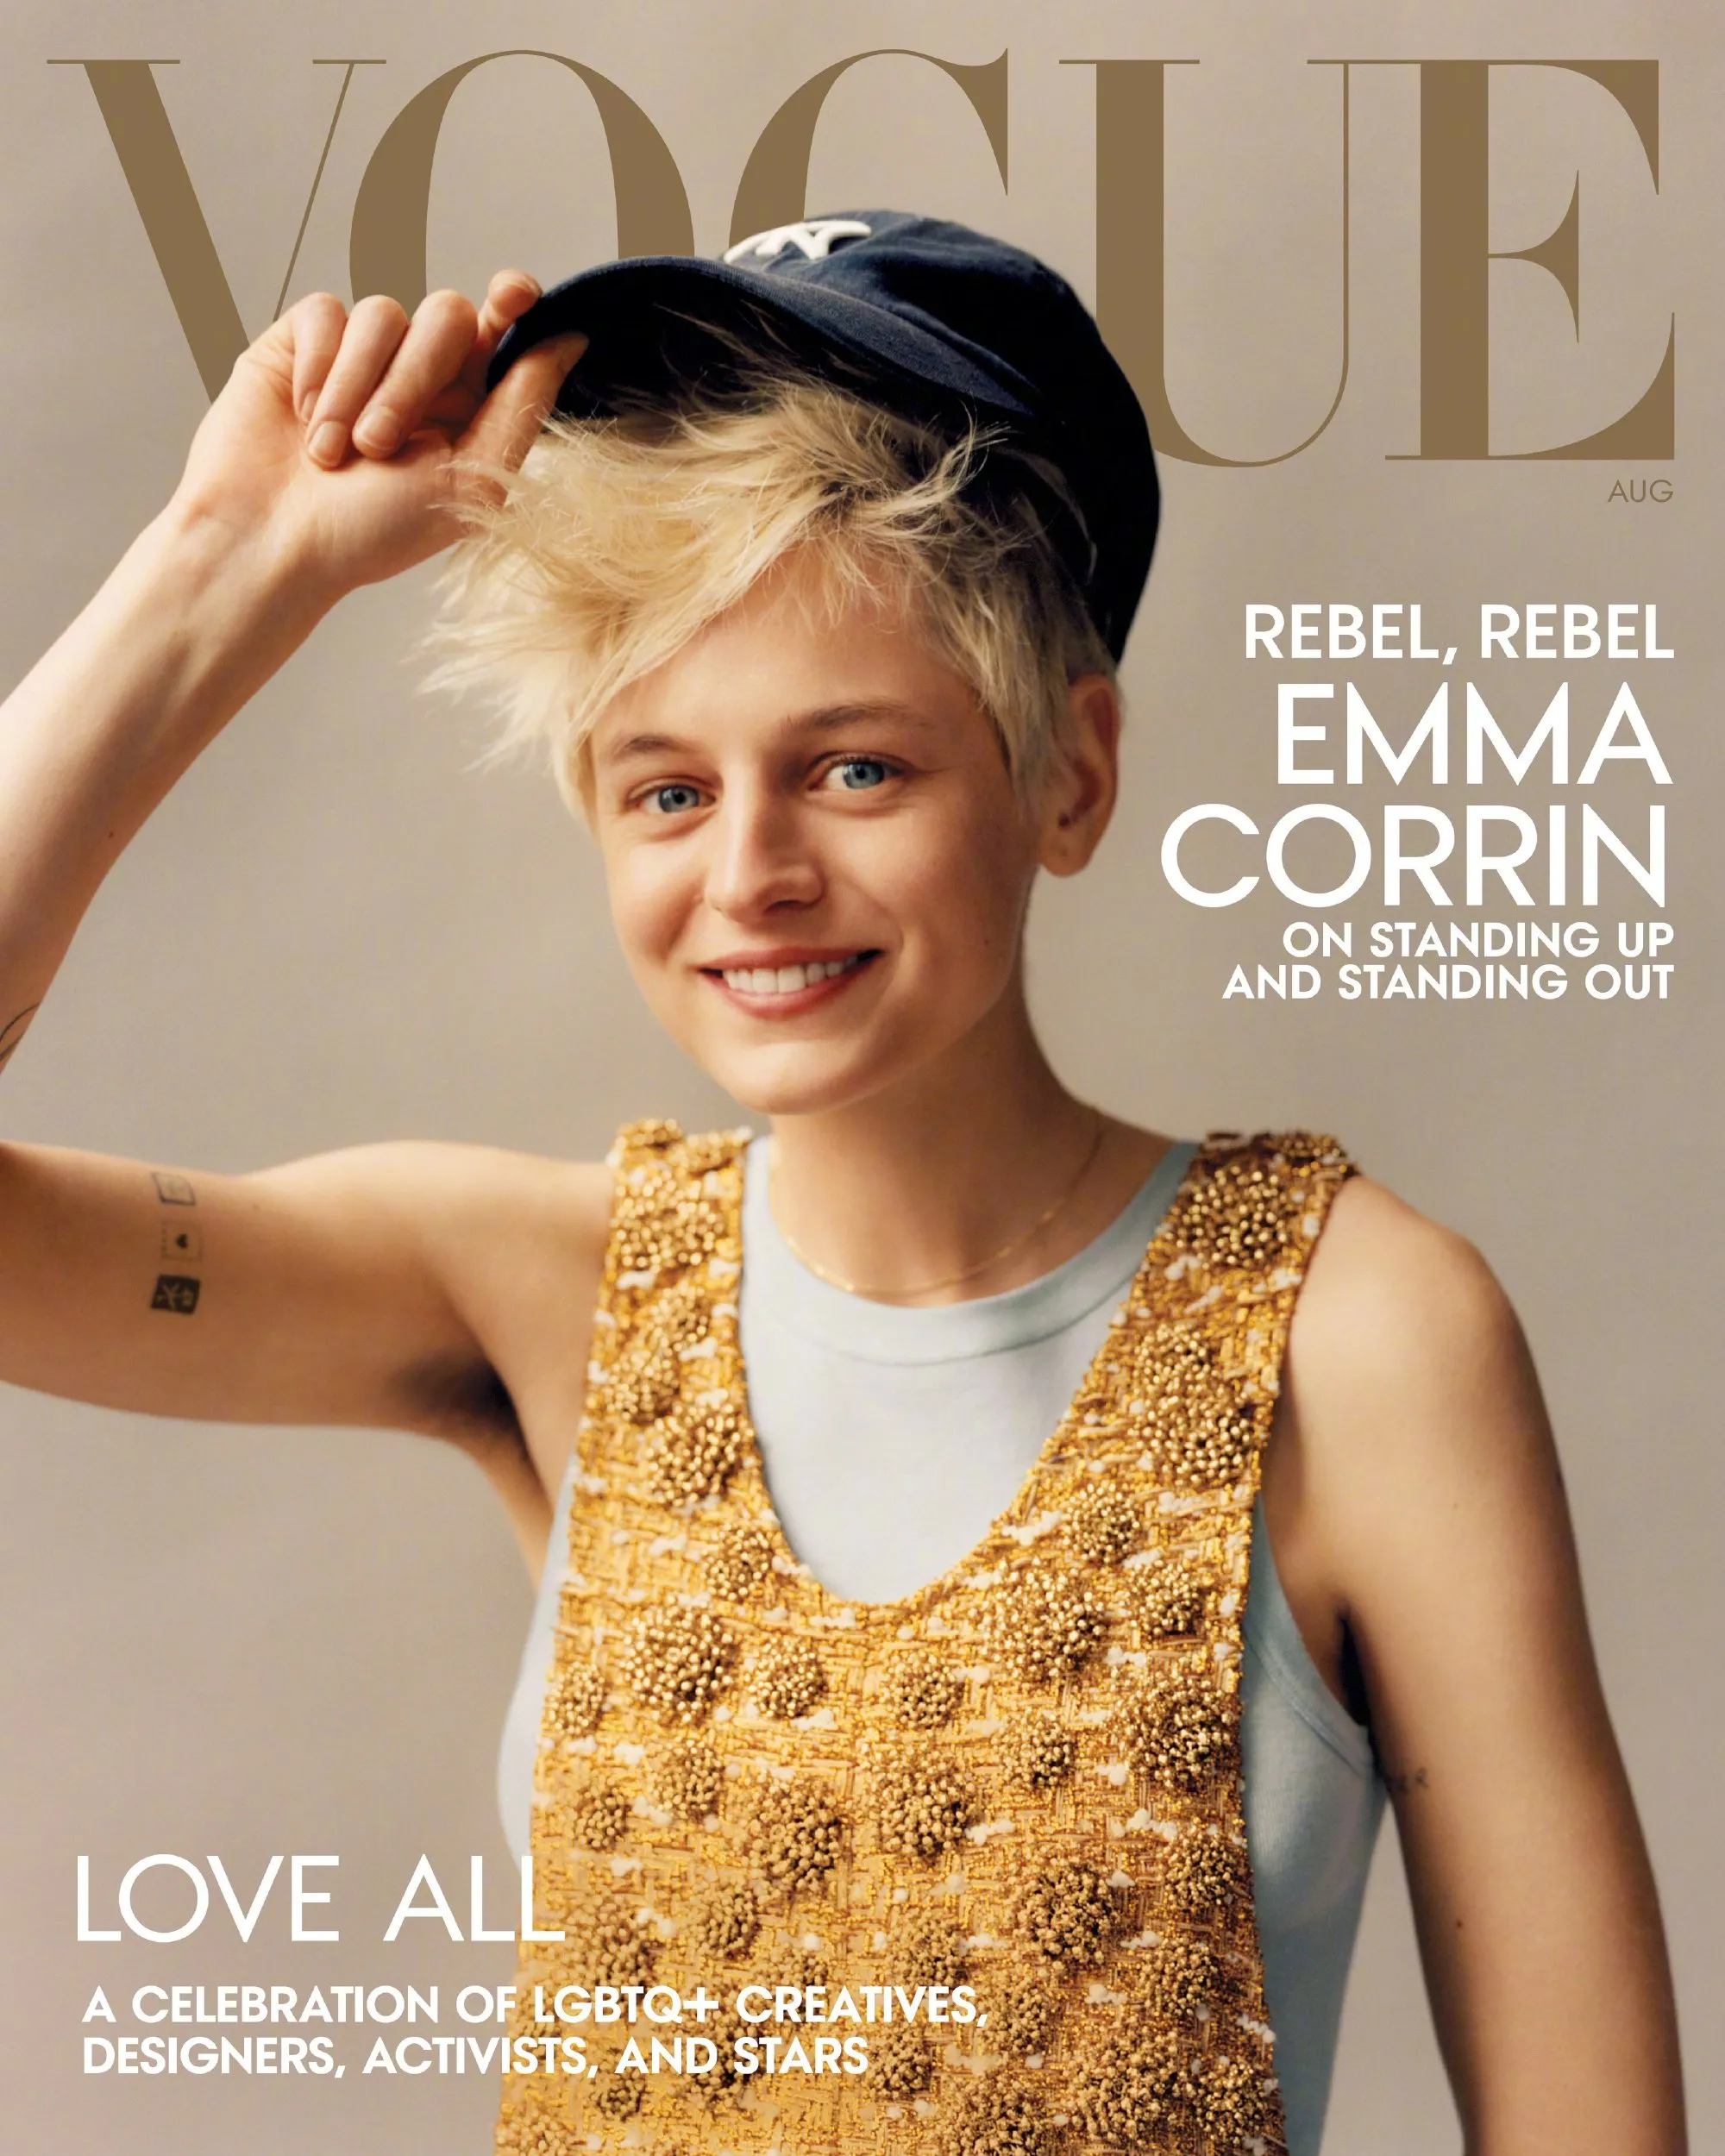 Emma Corrin, "Vogue" August issue photo | FMV6